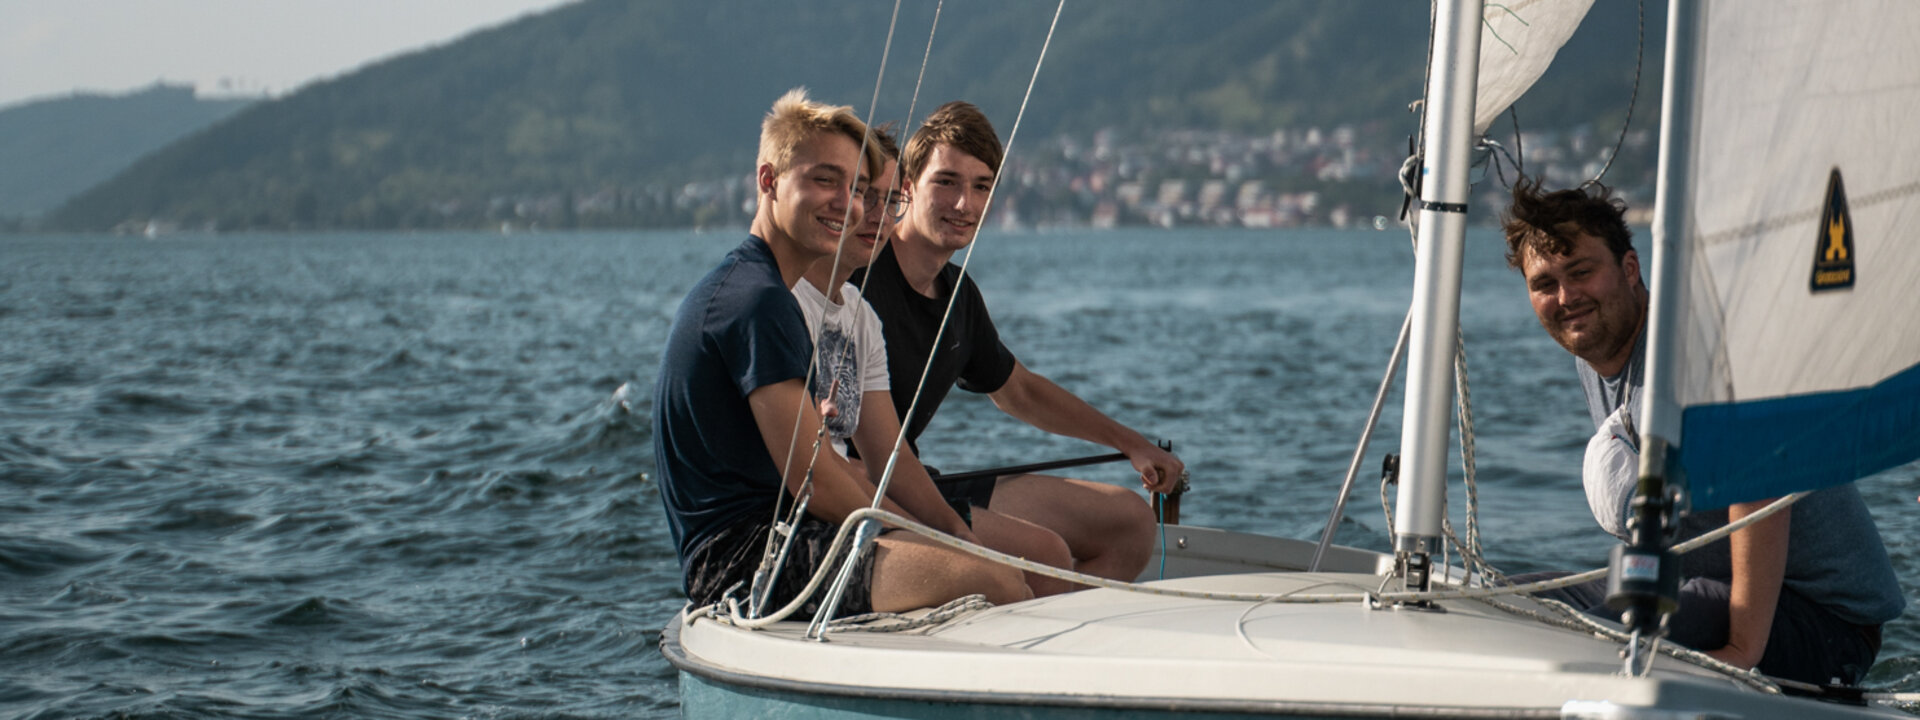 Sommerkollegiaten segeln auf dem Bodensee